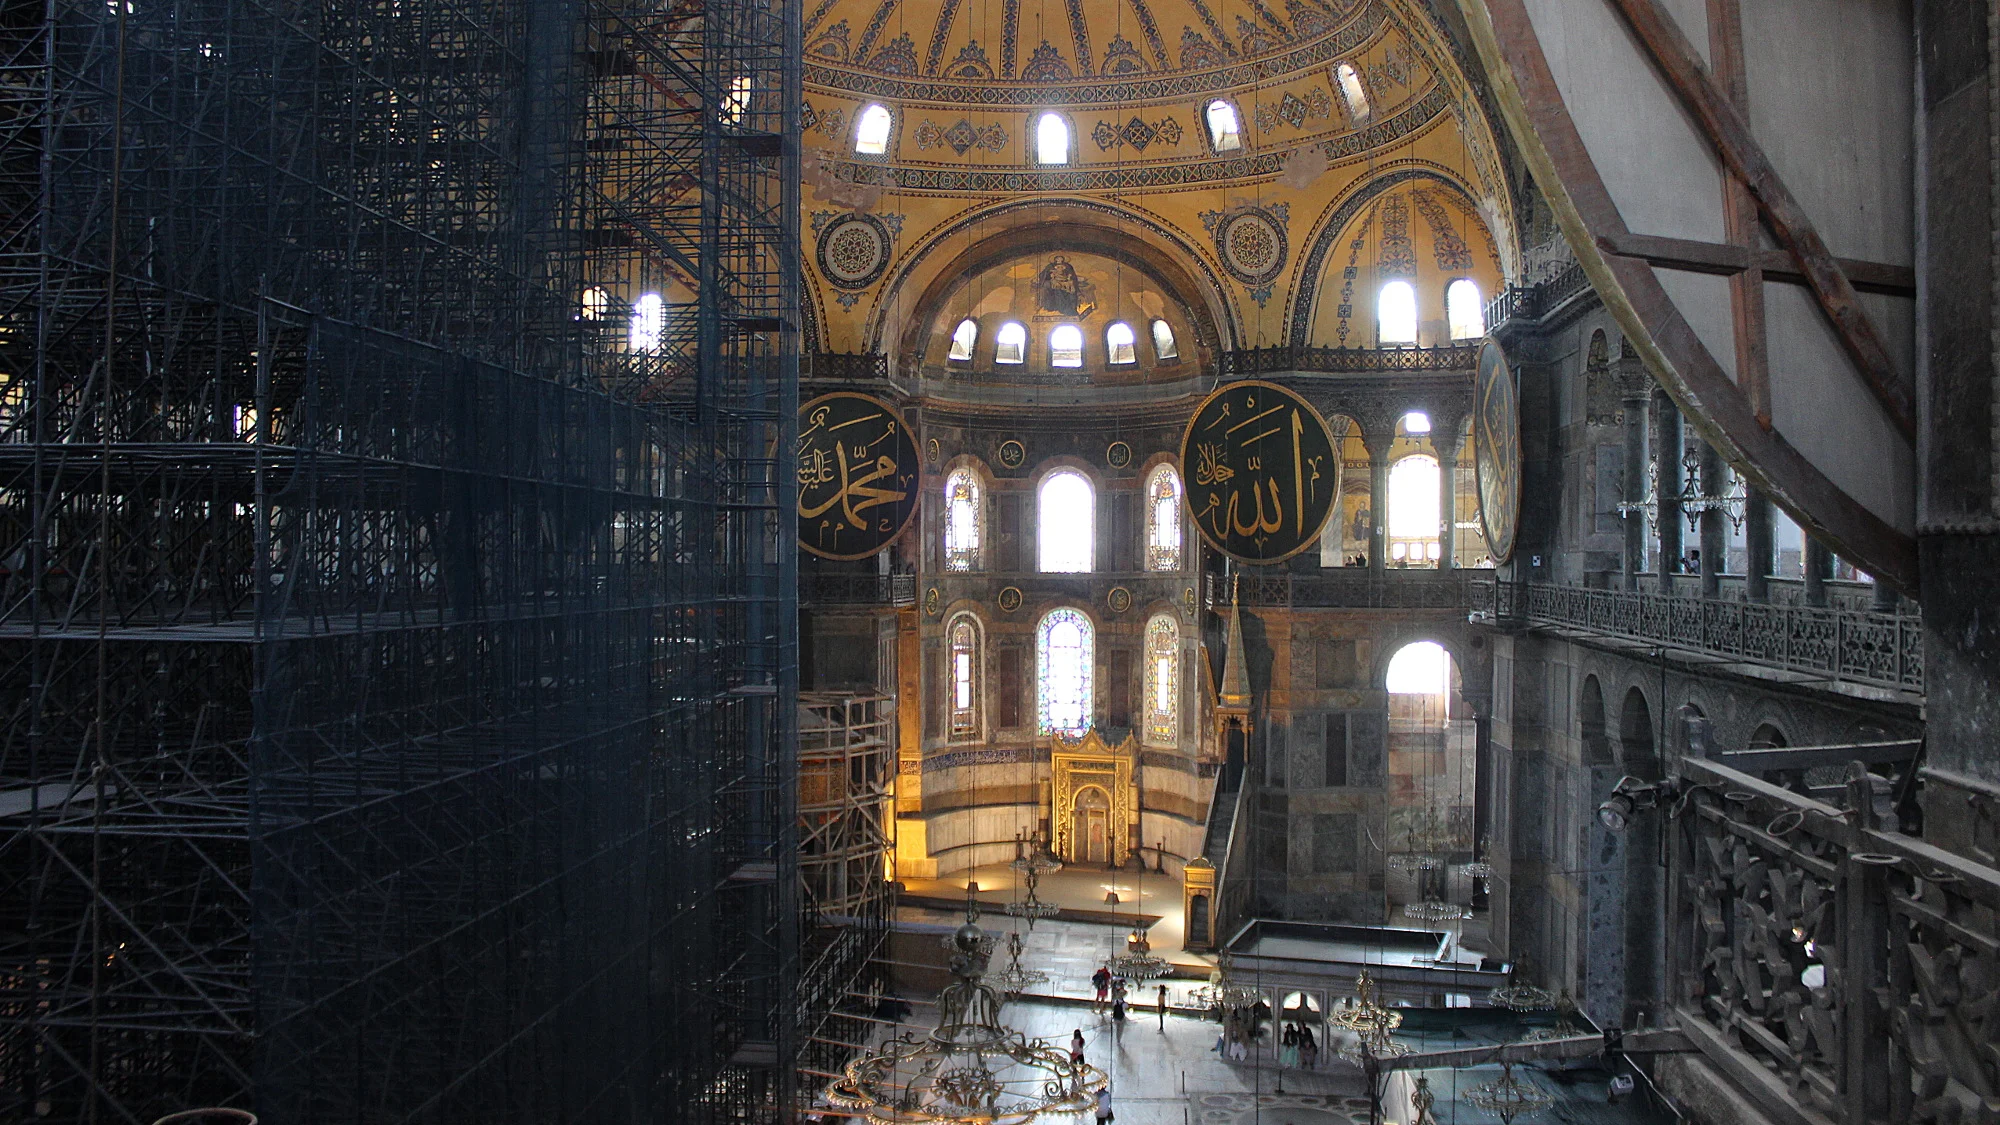 Hagia Sofia interior from balcony under reconstruction.